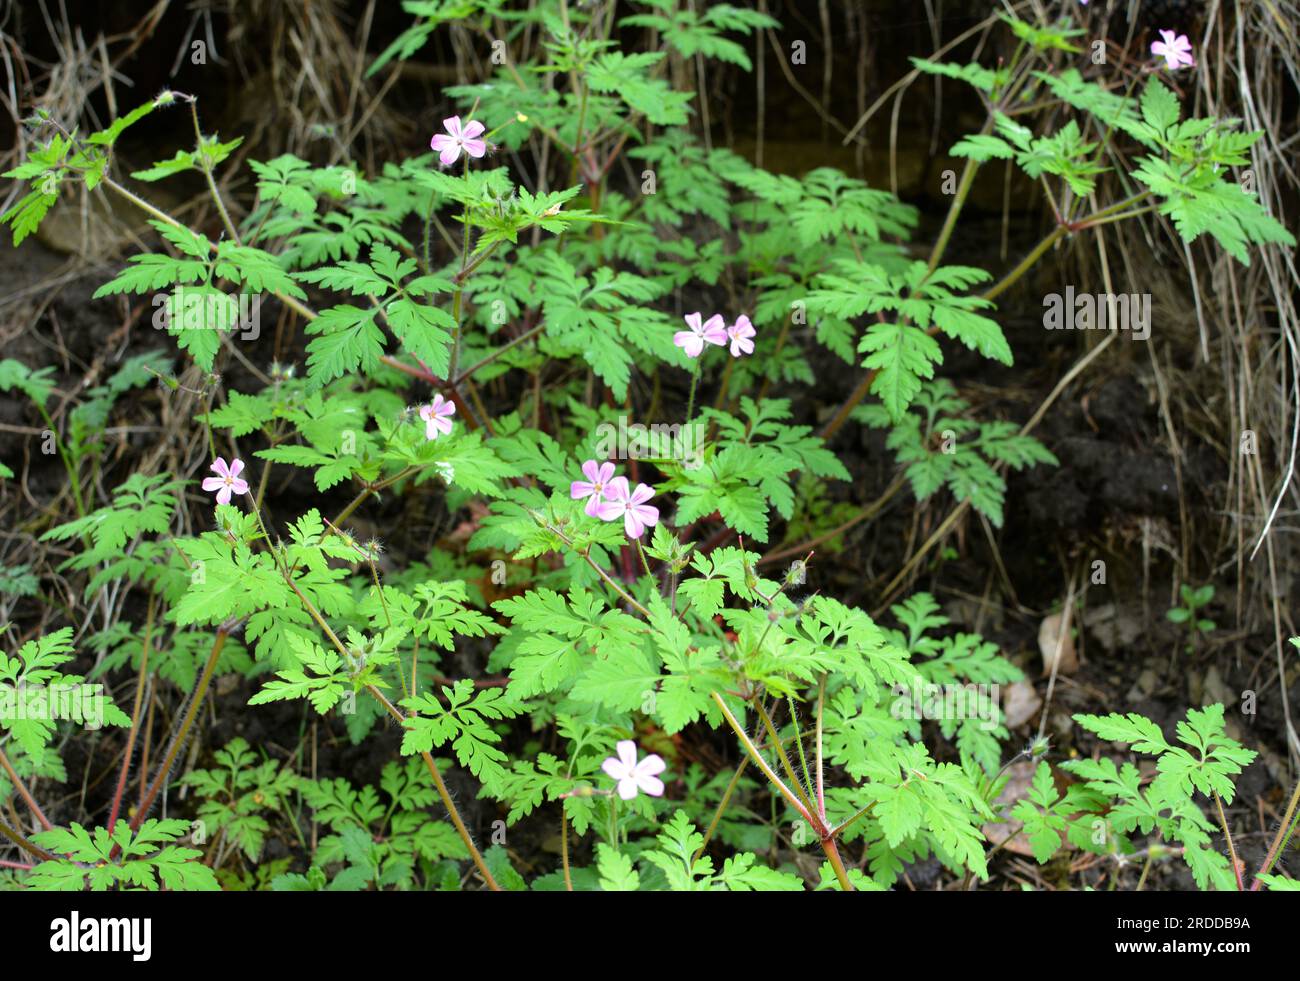 Geranium (Geranium robertianum) grows in the wild Stock Photo